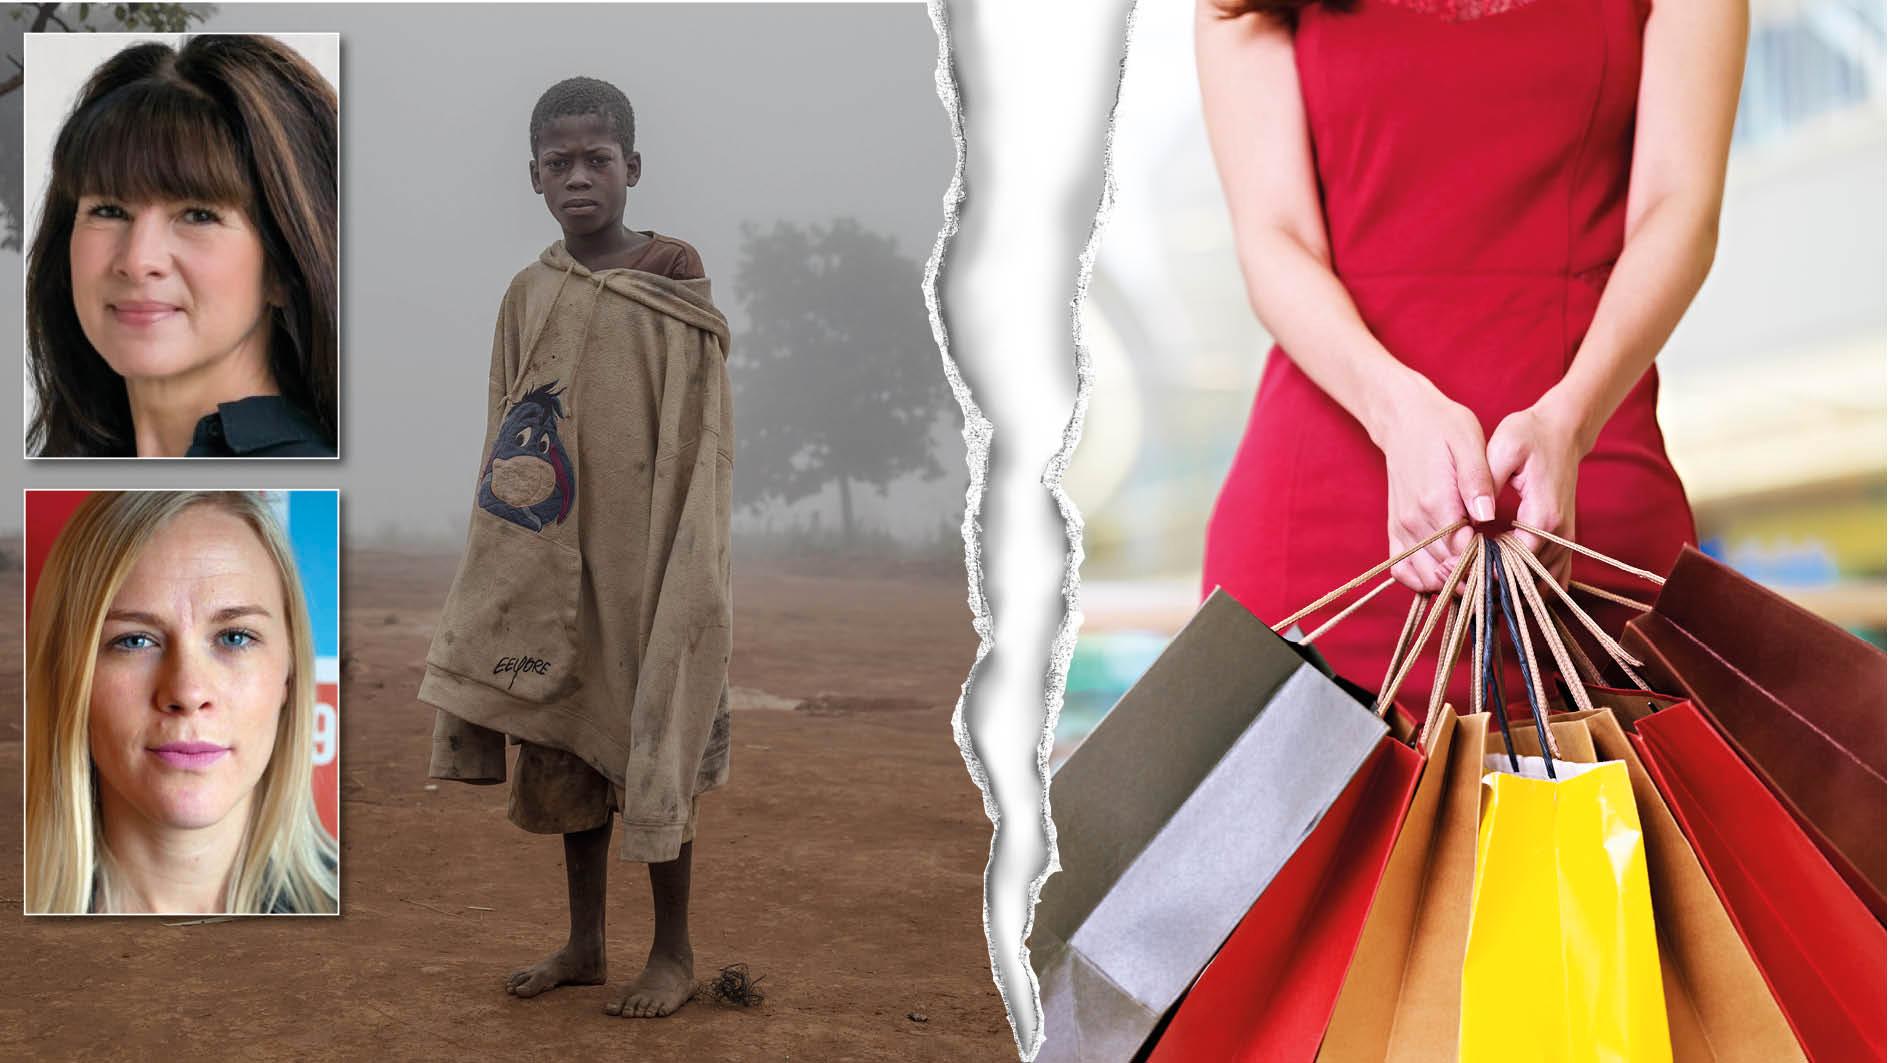 Den extrema fattigdomen har ökat mer under de senaste två åren än på 20 år. Samtidigt har världens dollarmiljardärer ökat sina förmögenheter lika mycket de senaste två åren som under 23 år dessförinnan, skriver Suzanne Standfast och Hanna Nelson. På bilden syns en pojke under svälten i Malawi 2016.